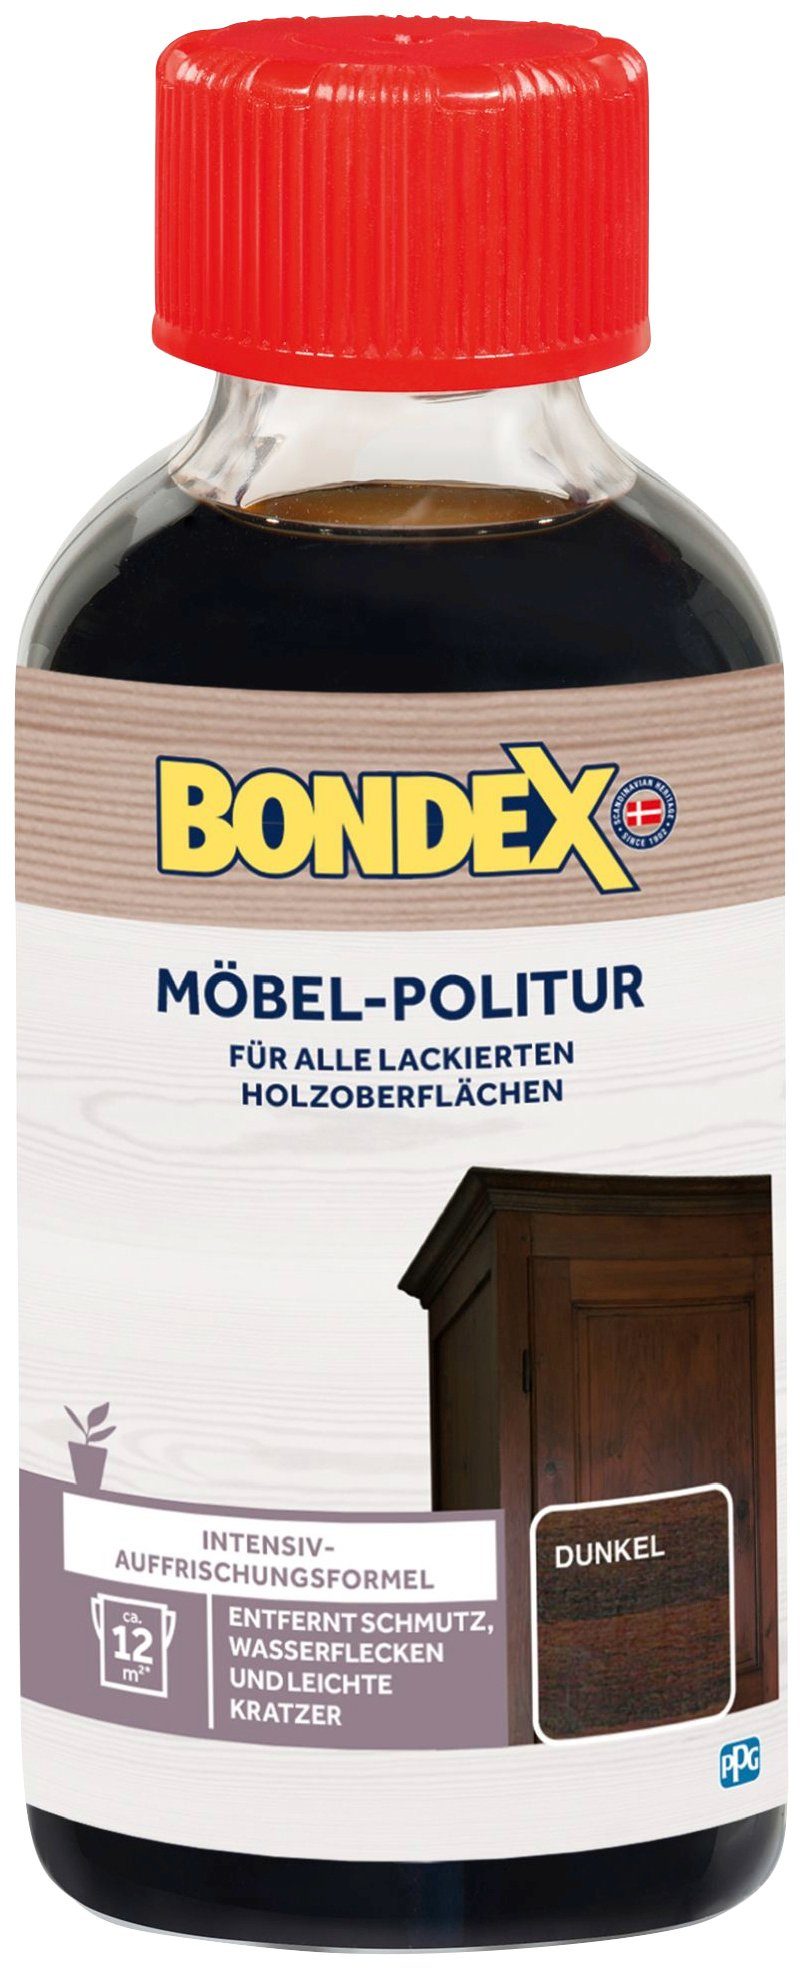 MÖBEL-POLITUR Bondex Holzpflegeöl, braun l Dunkel 0,15